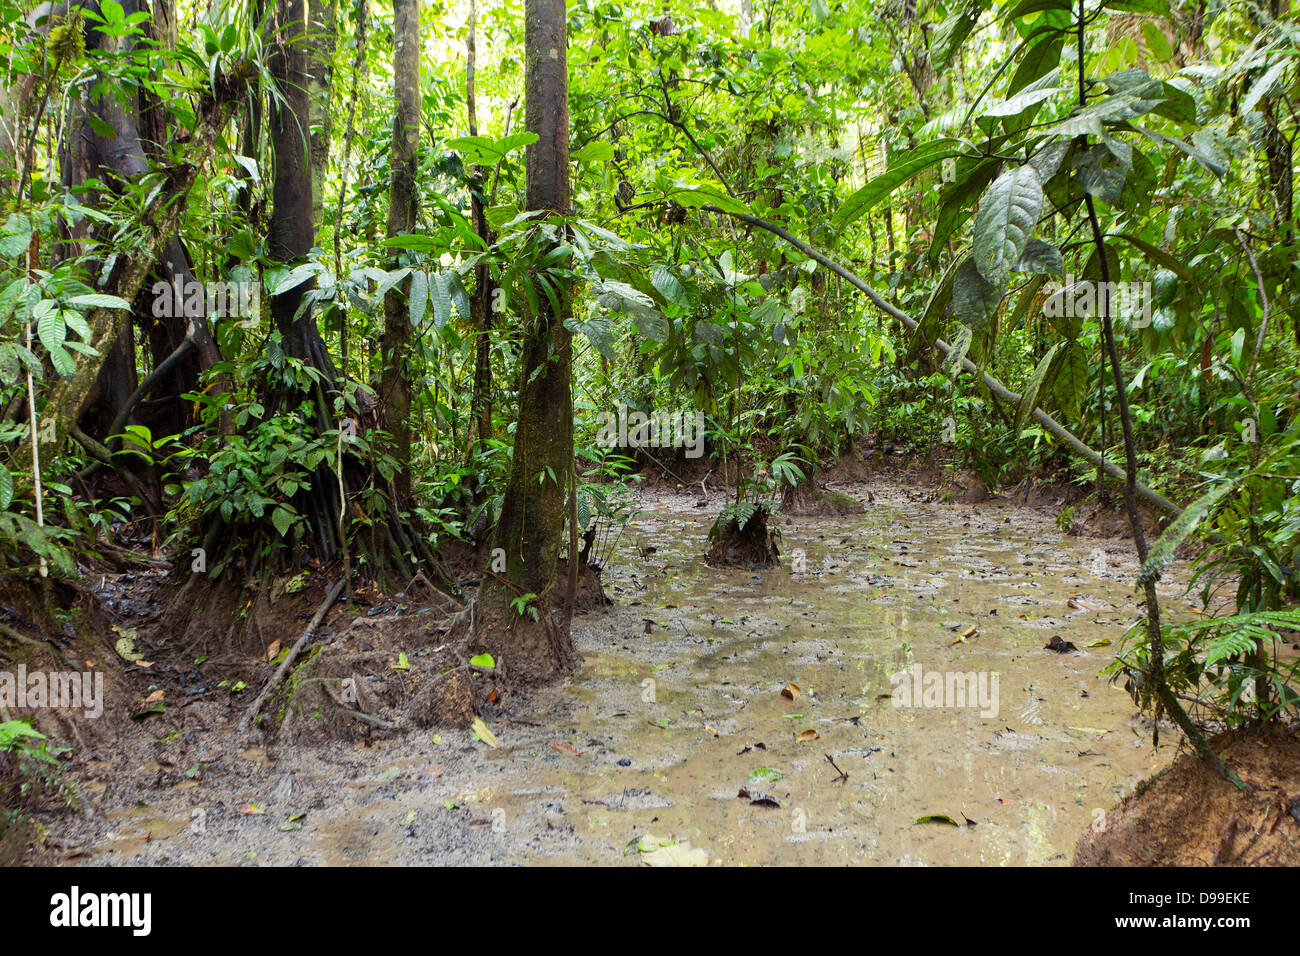 Un 'salt leccare' sul suolo della foresta pluviale in Ecuador. Grandi mammiferi provengono da questi siti per mangiare minerali ricchi di terra. Foto Stock